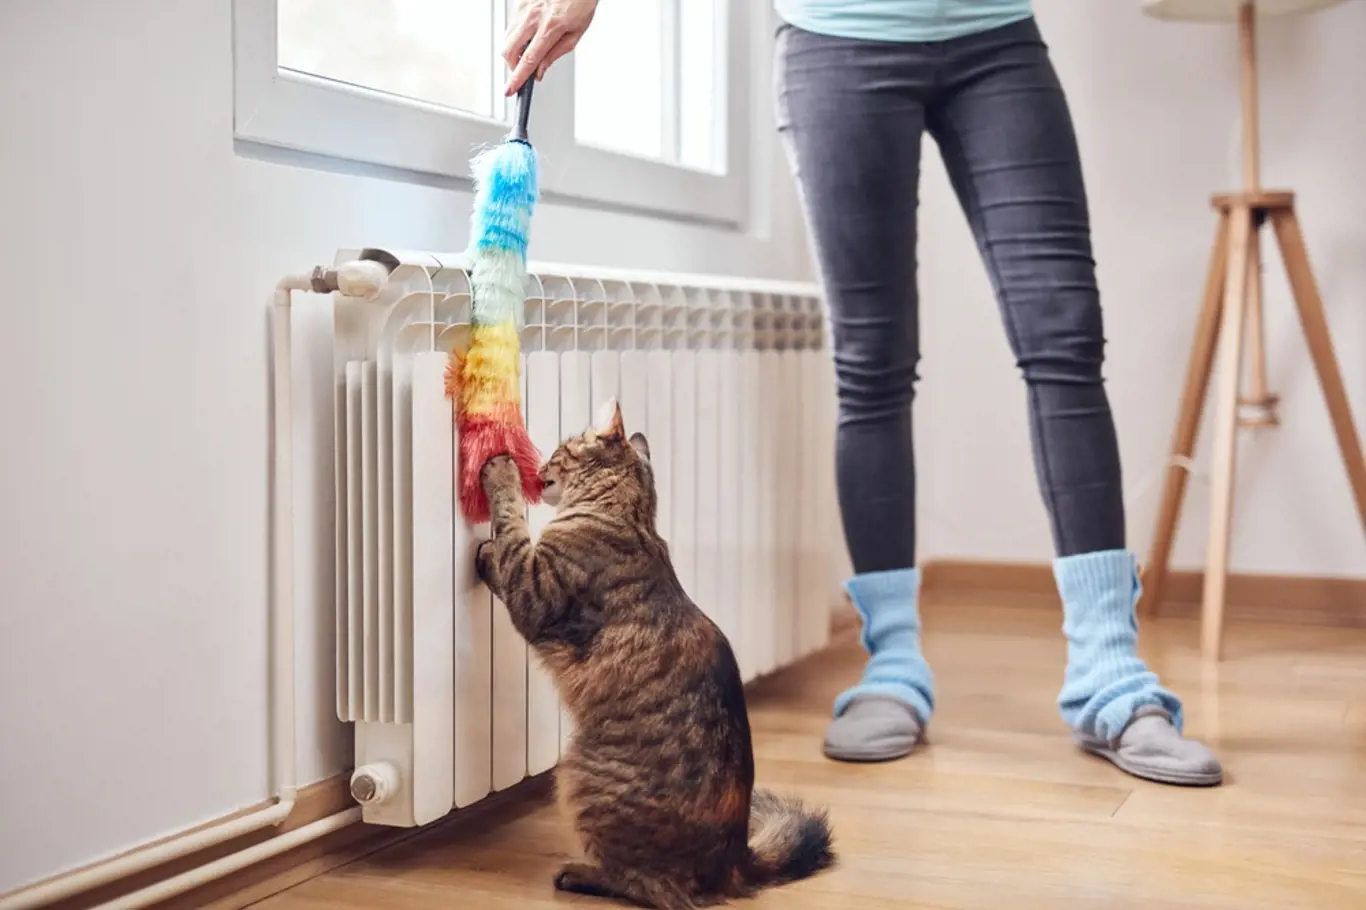 Čistit byste měli radiátor před každou topnou sezonou.